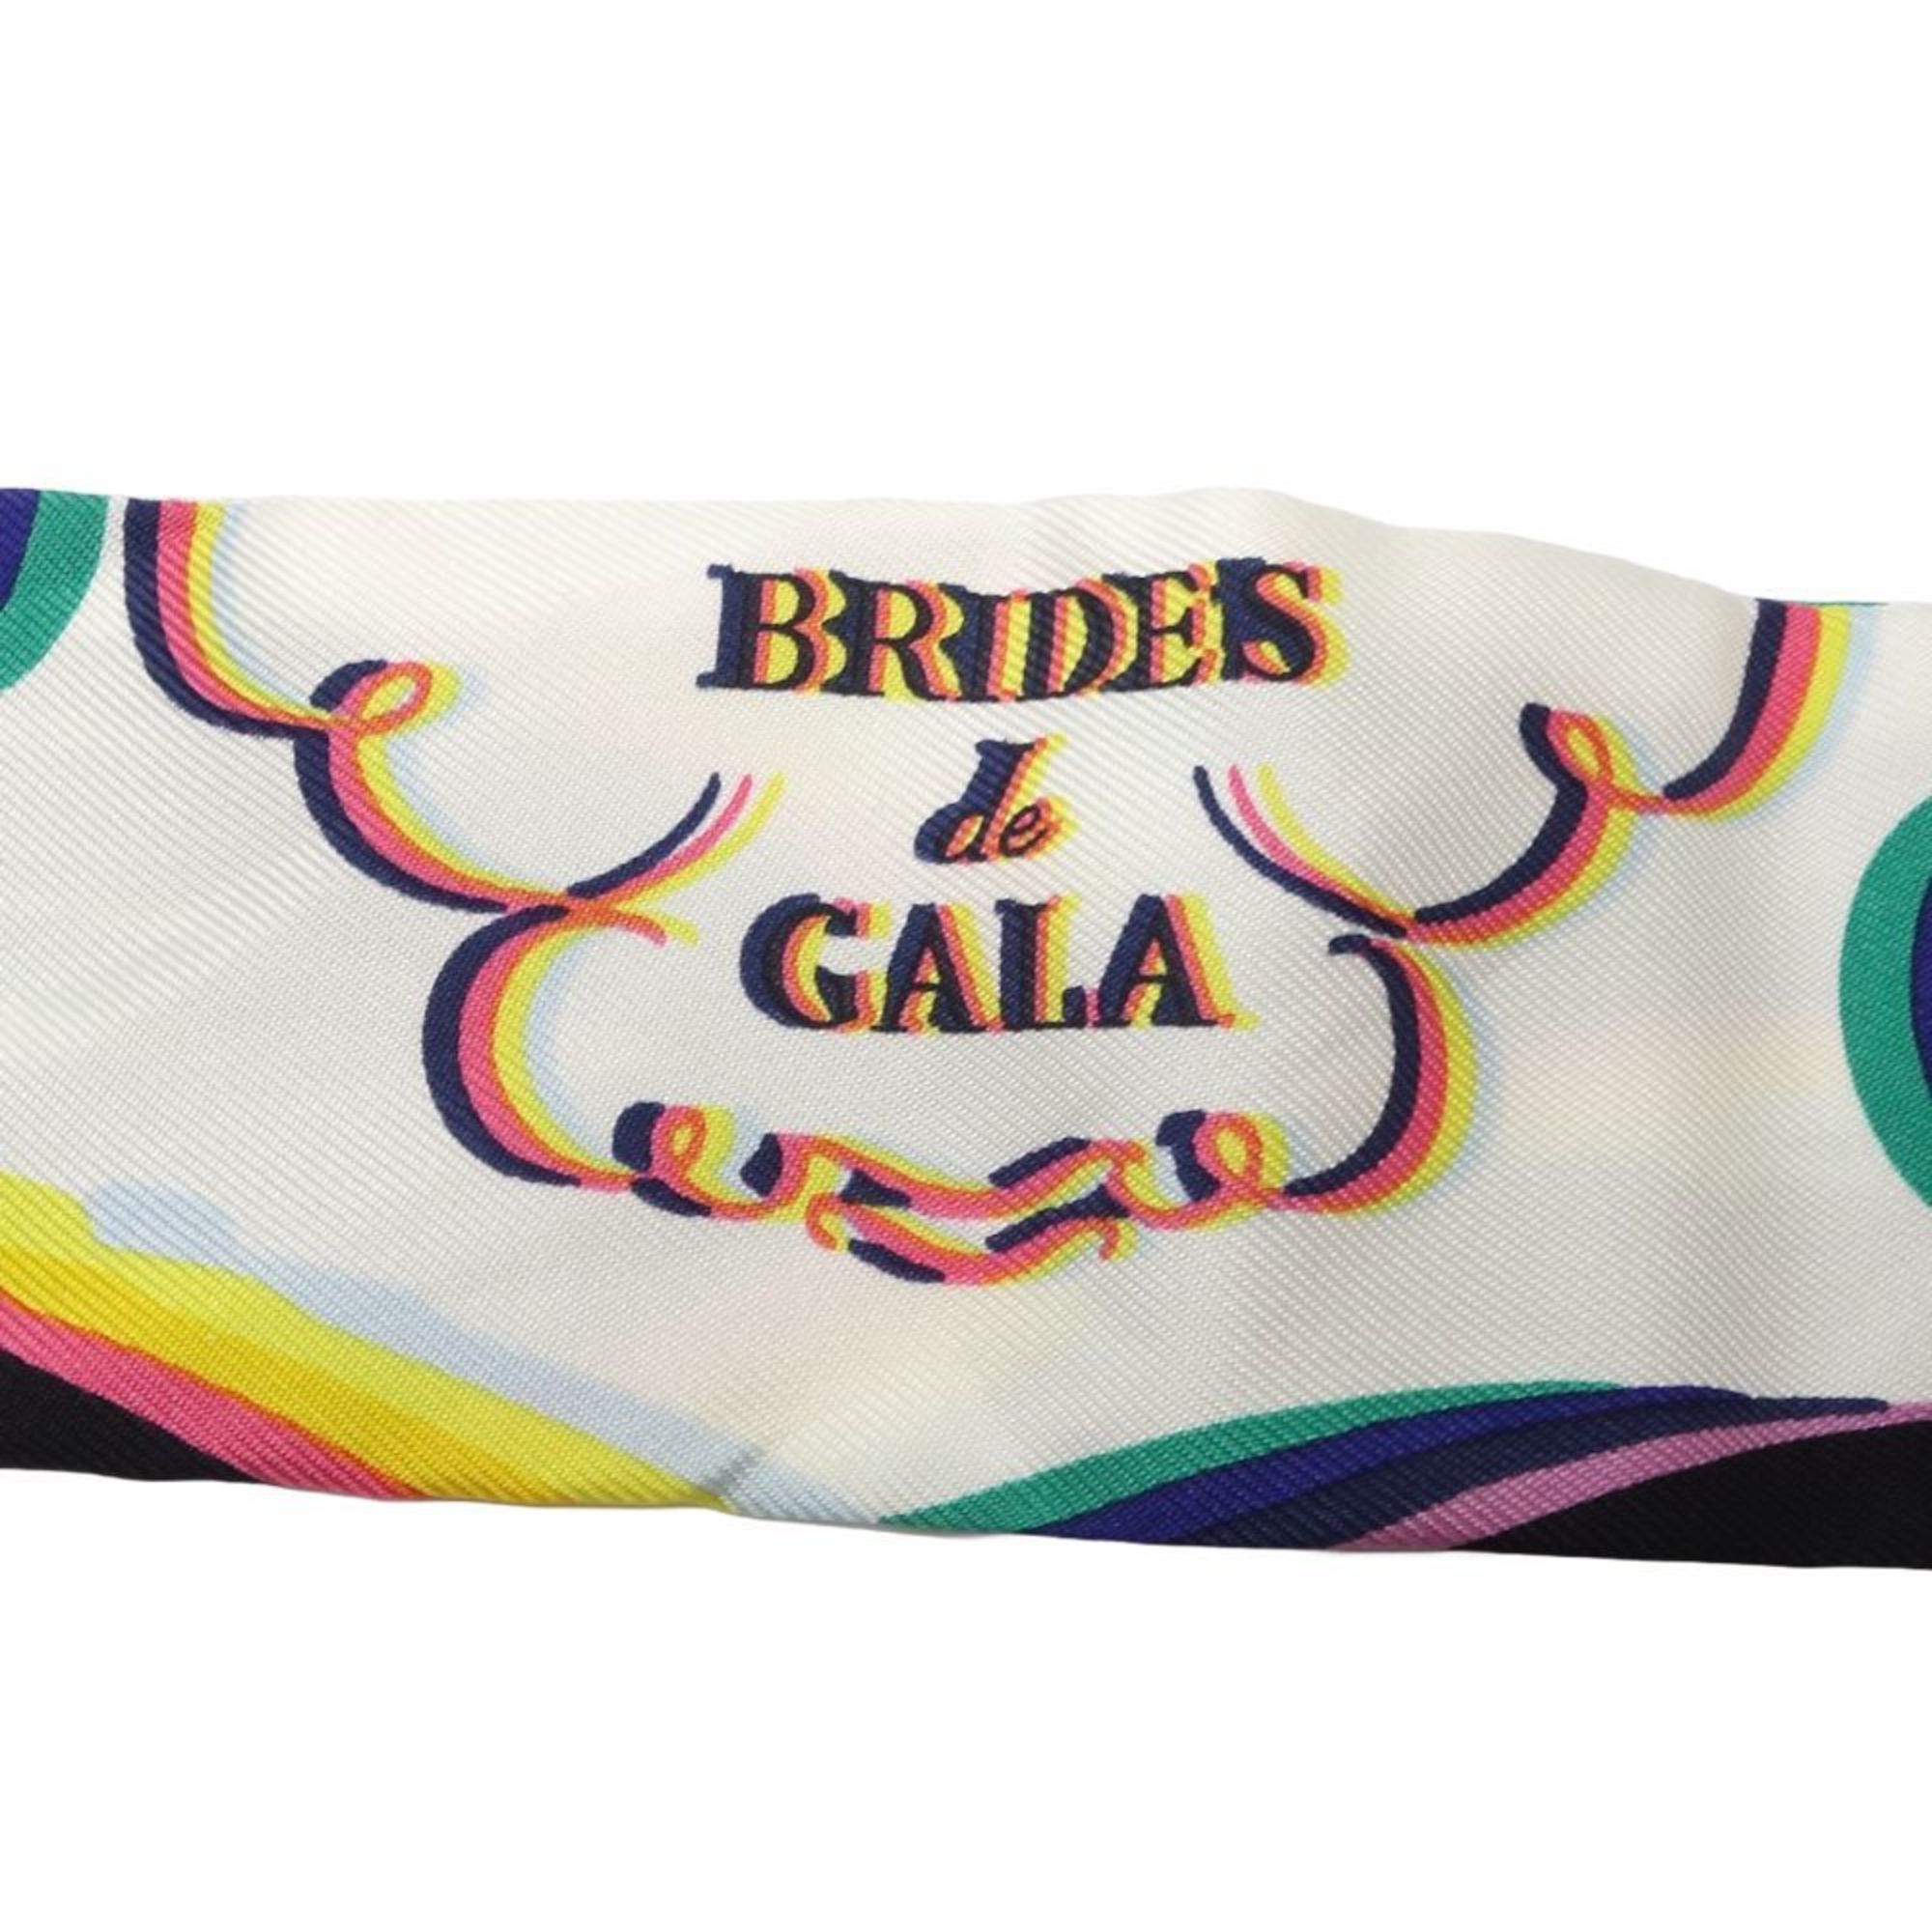 HERMES Scarf Twilly Ceremonial Bridle BRIDES de GALA Silk Multicolor Black 180541